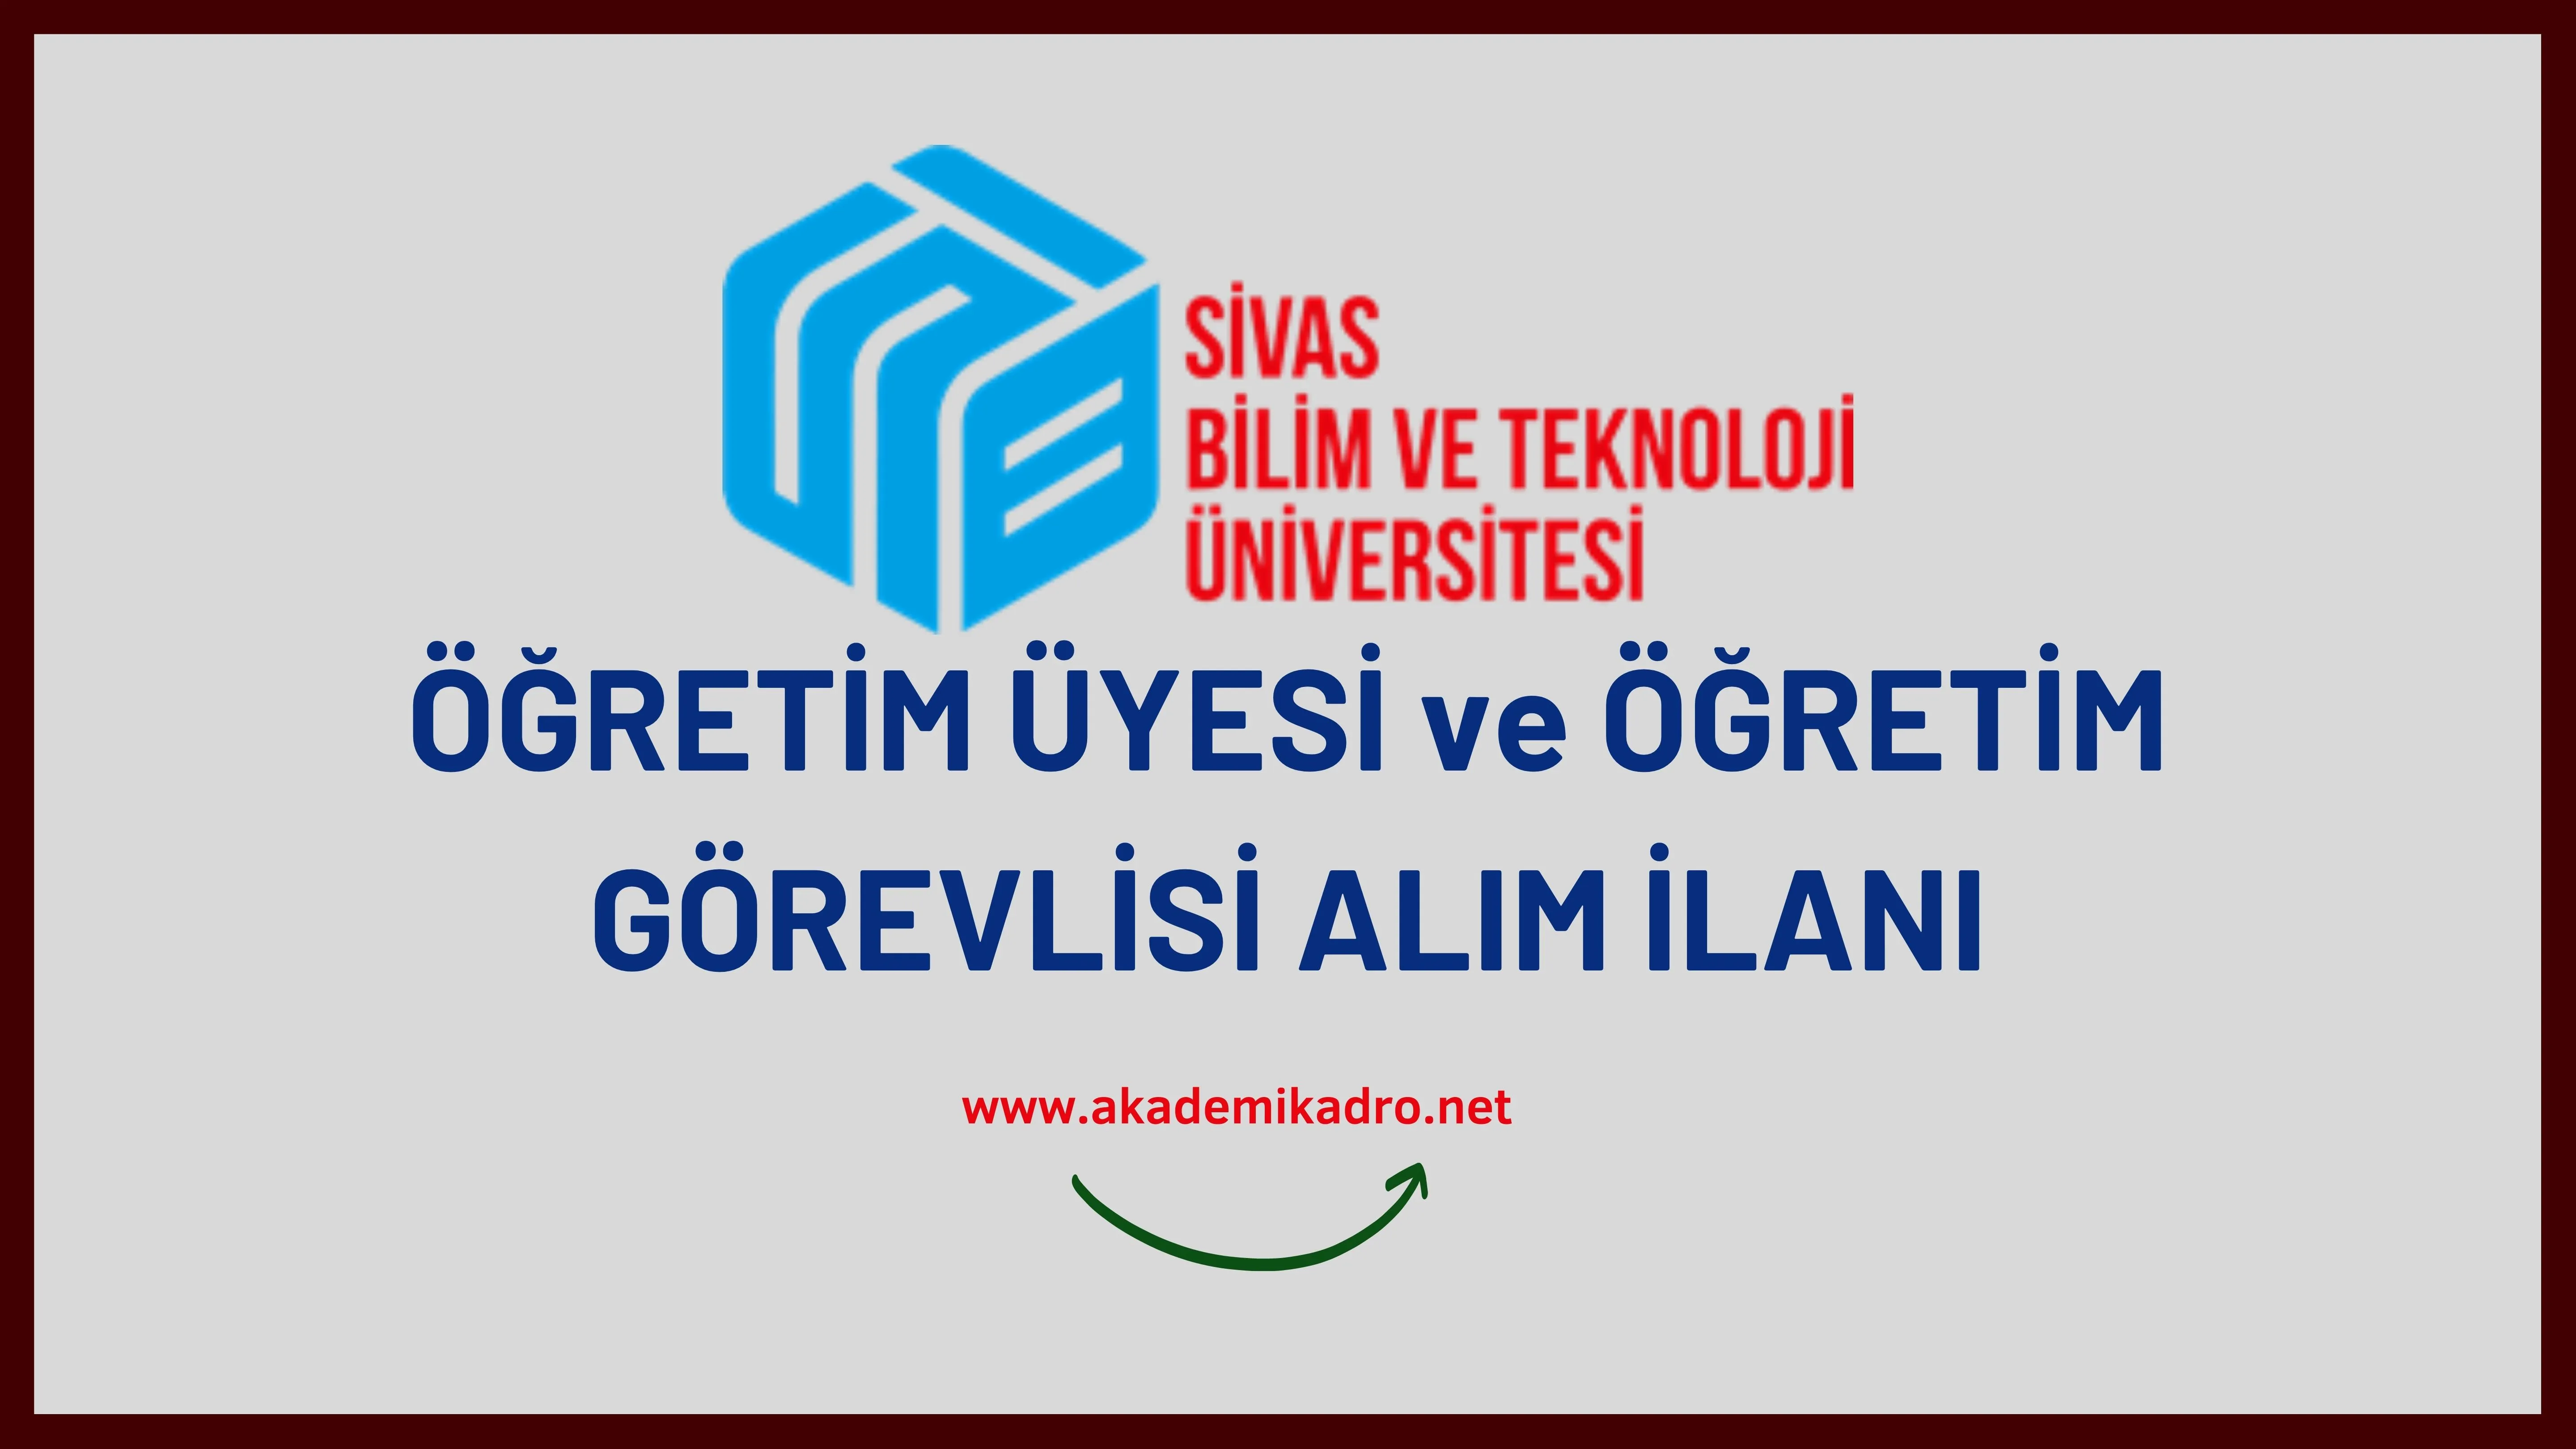 Sivas Bilim ve Teknoloji Üniversitesi 18 Öğretim üyesi ve 5 Öğretim Görevlisi alacaktır. Son başvuru tarihi 26 Eylül 2022